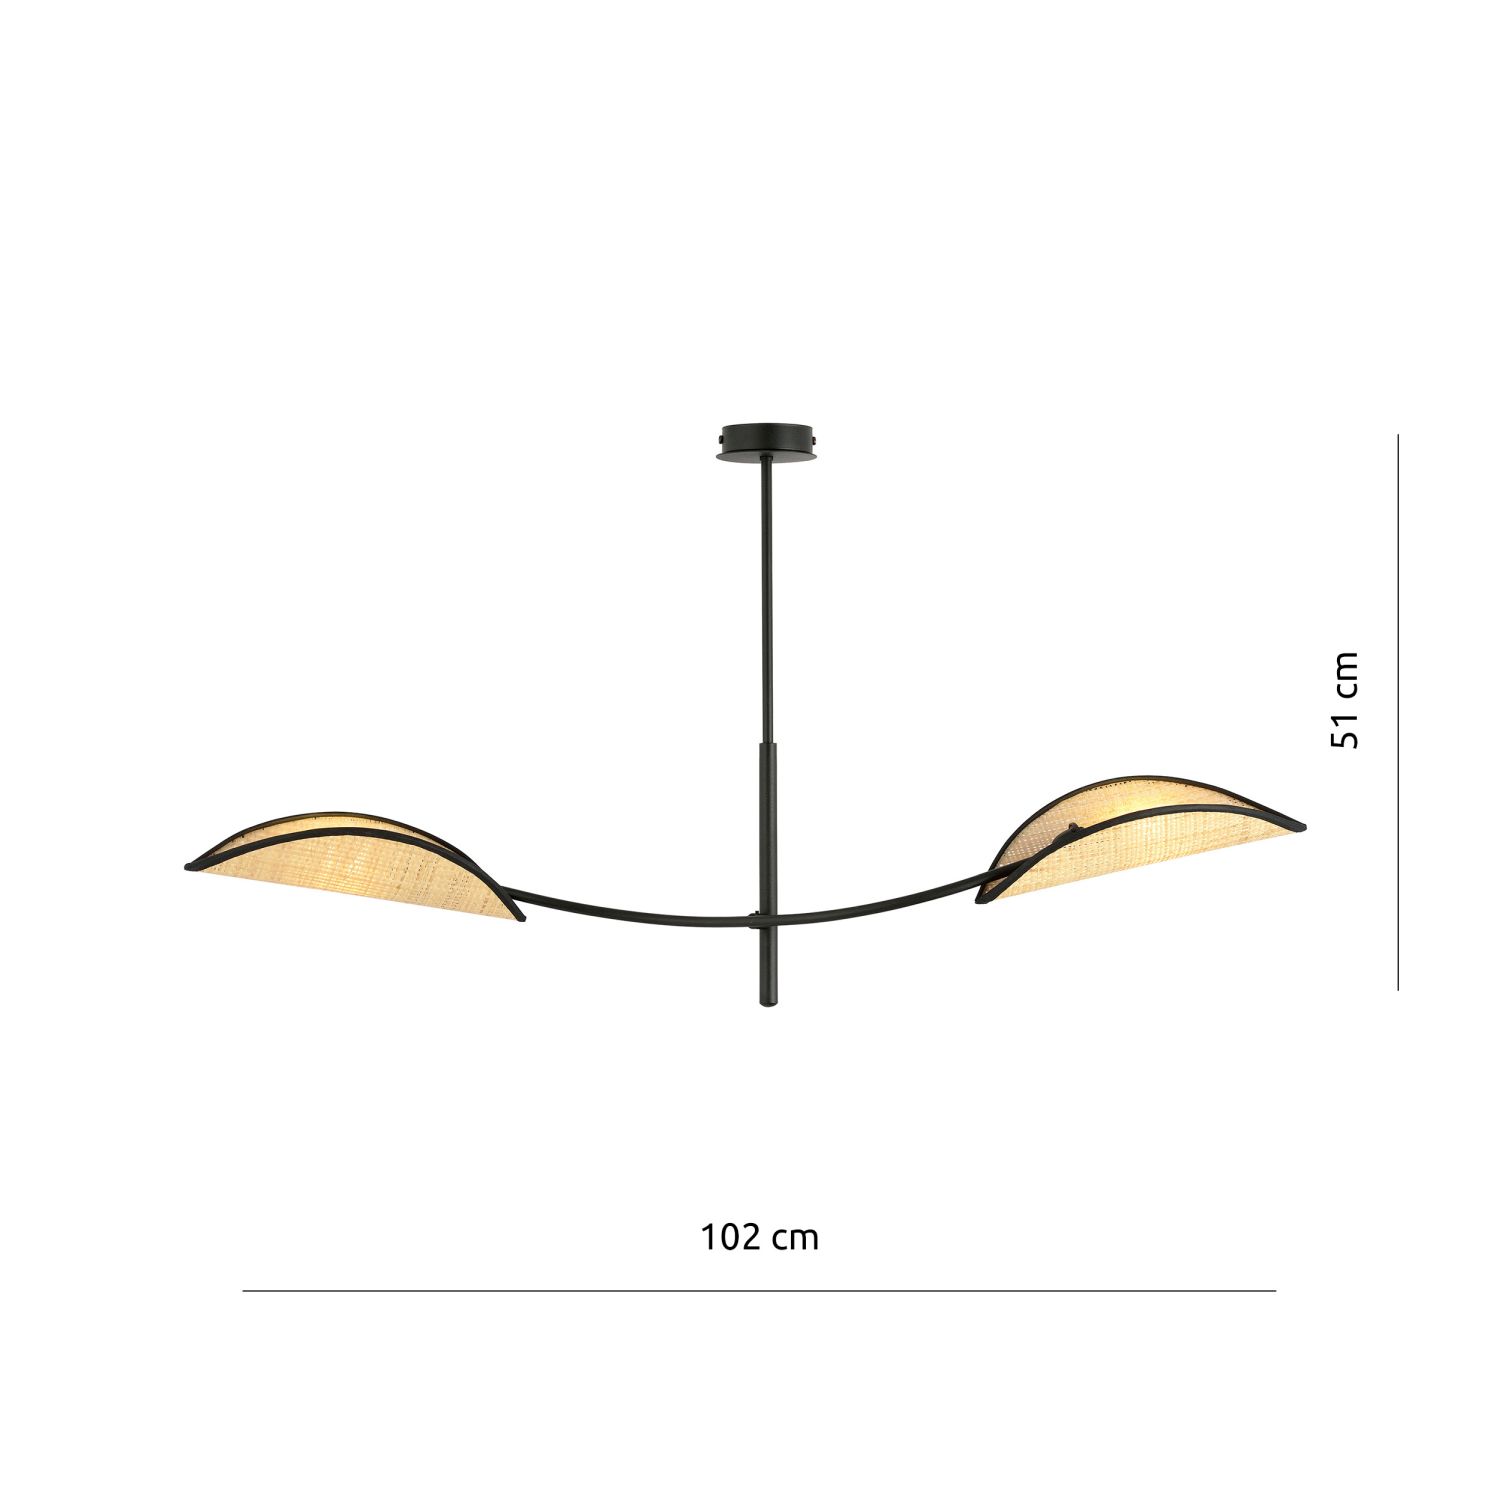 Deckenlampe Rattan Metall 103 cm lang drehbar 2-flammig E14